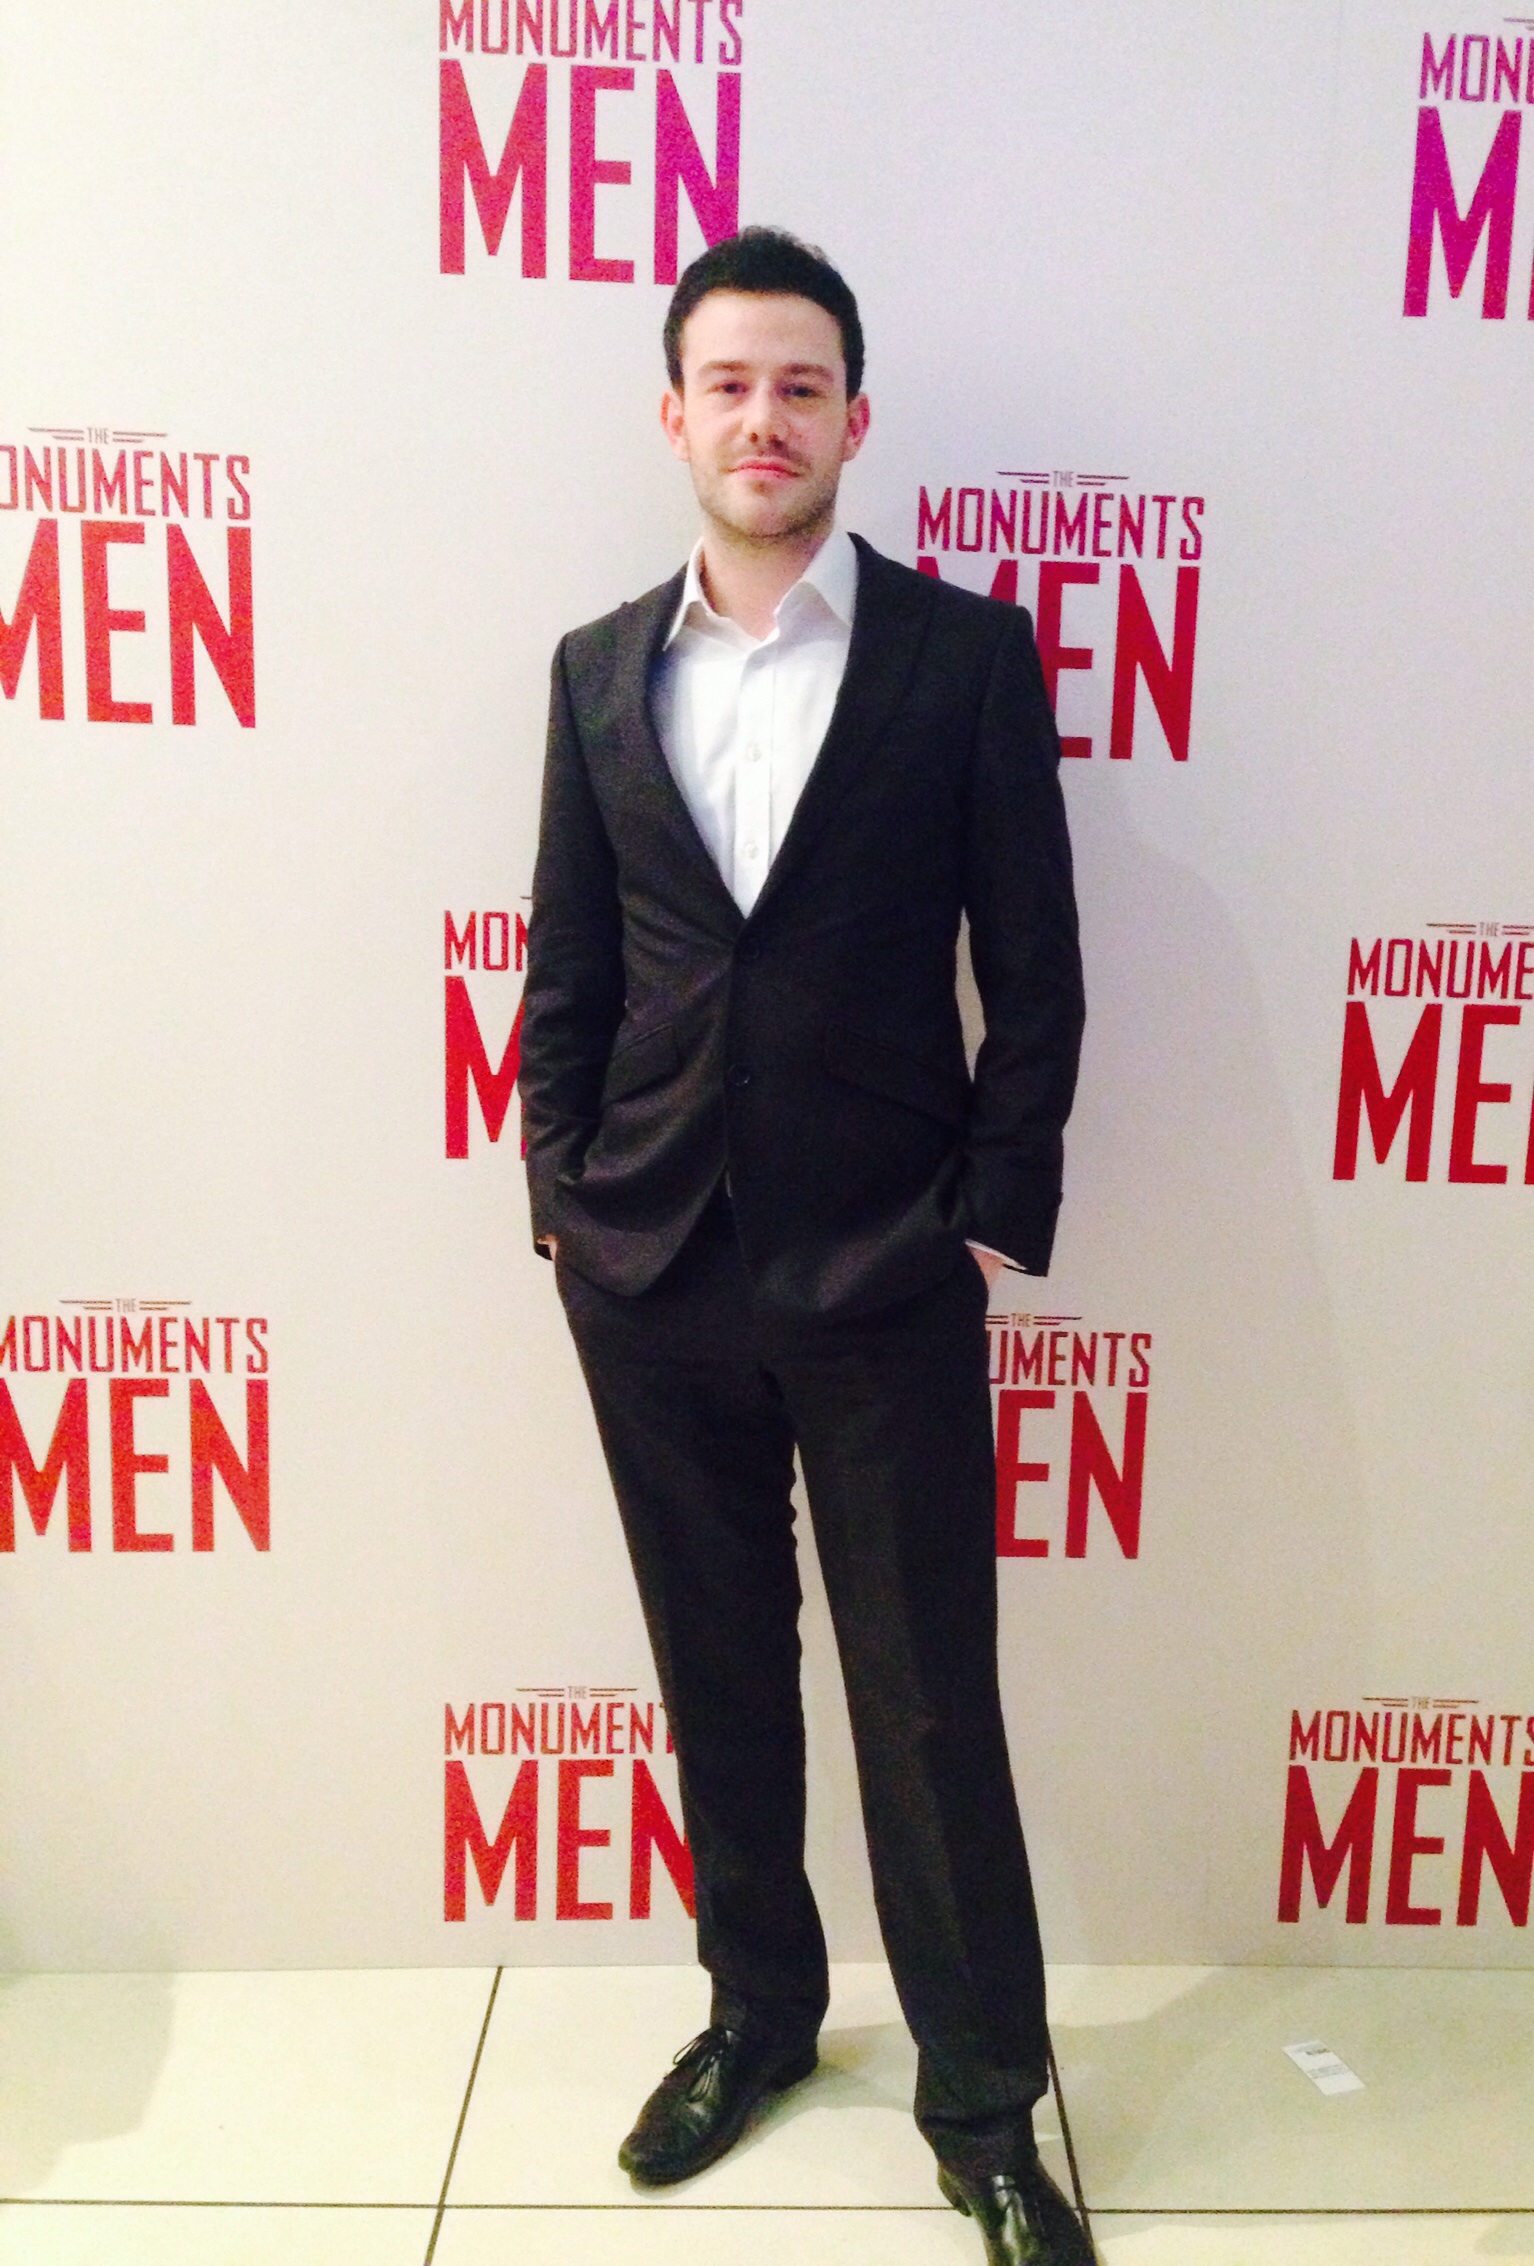 At the 'Monuments Men' London Premiere